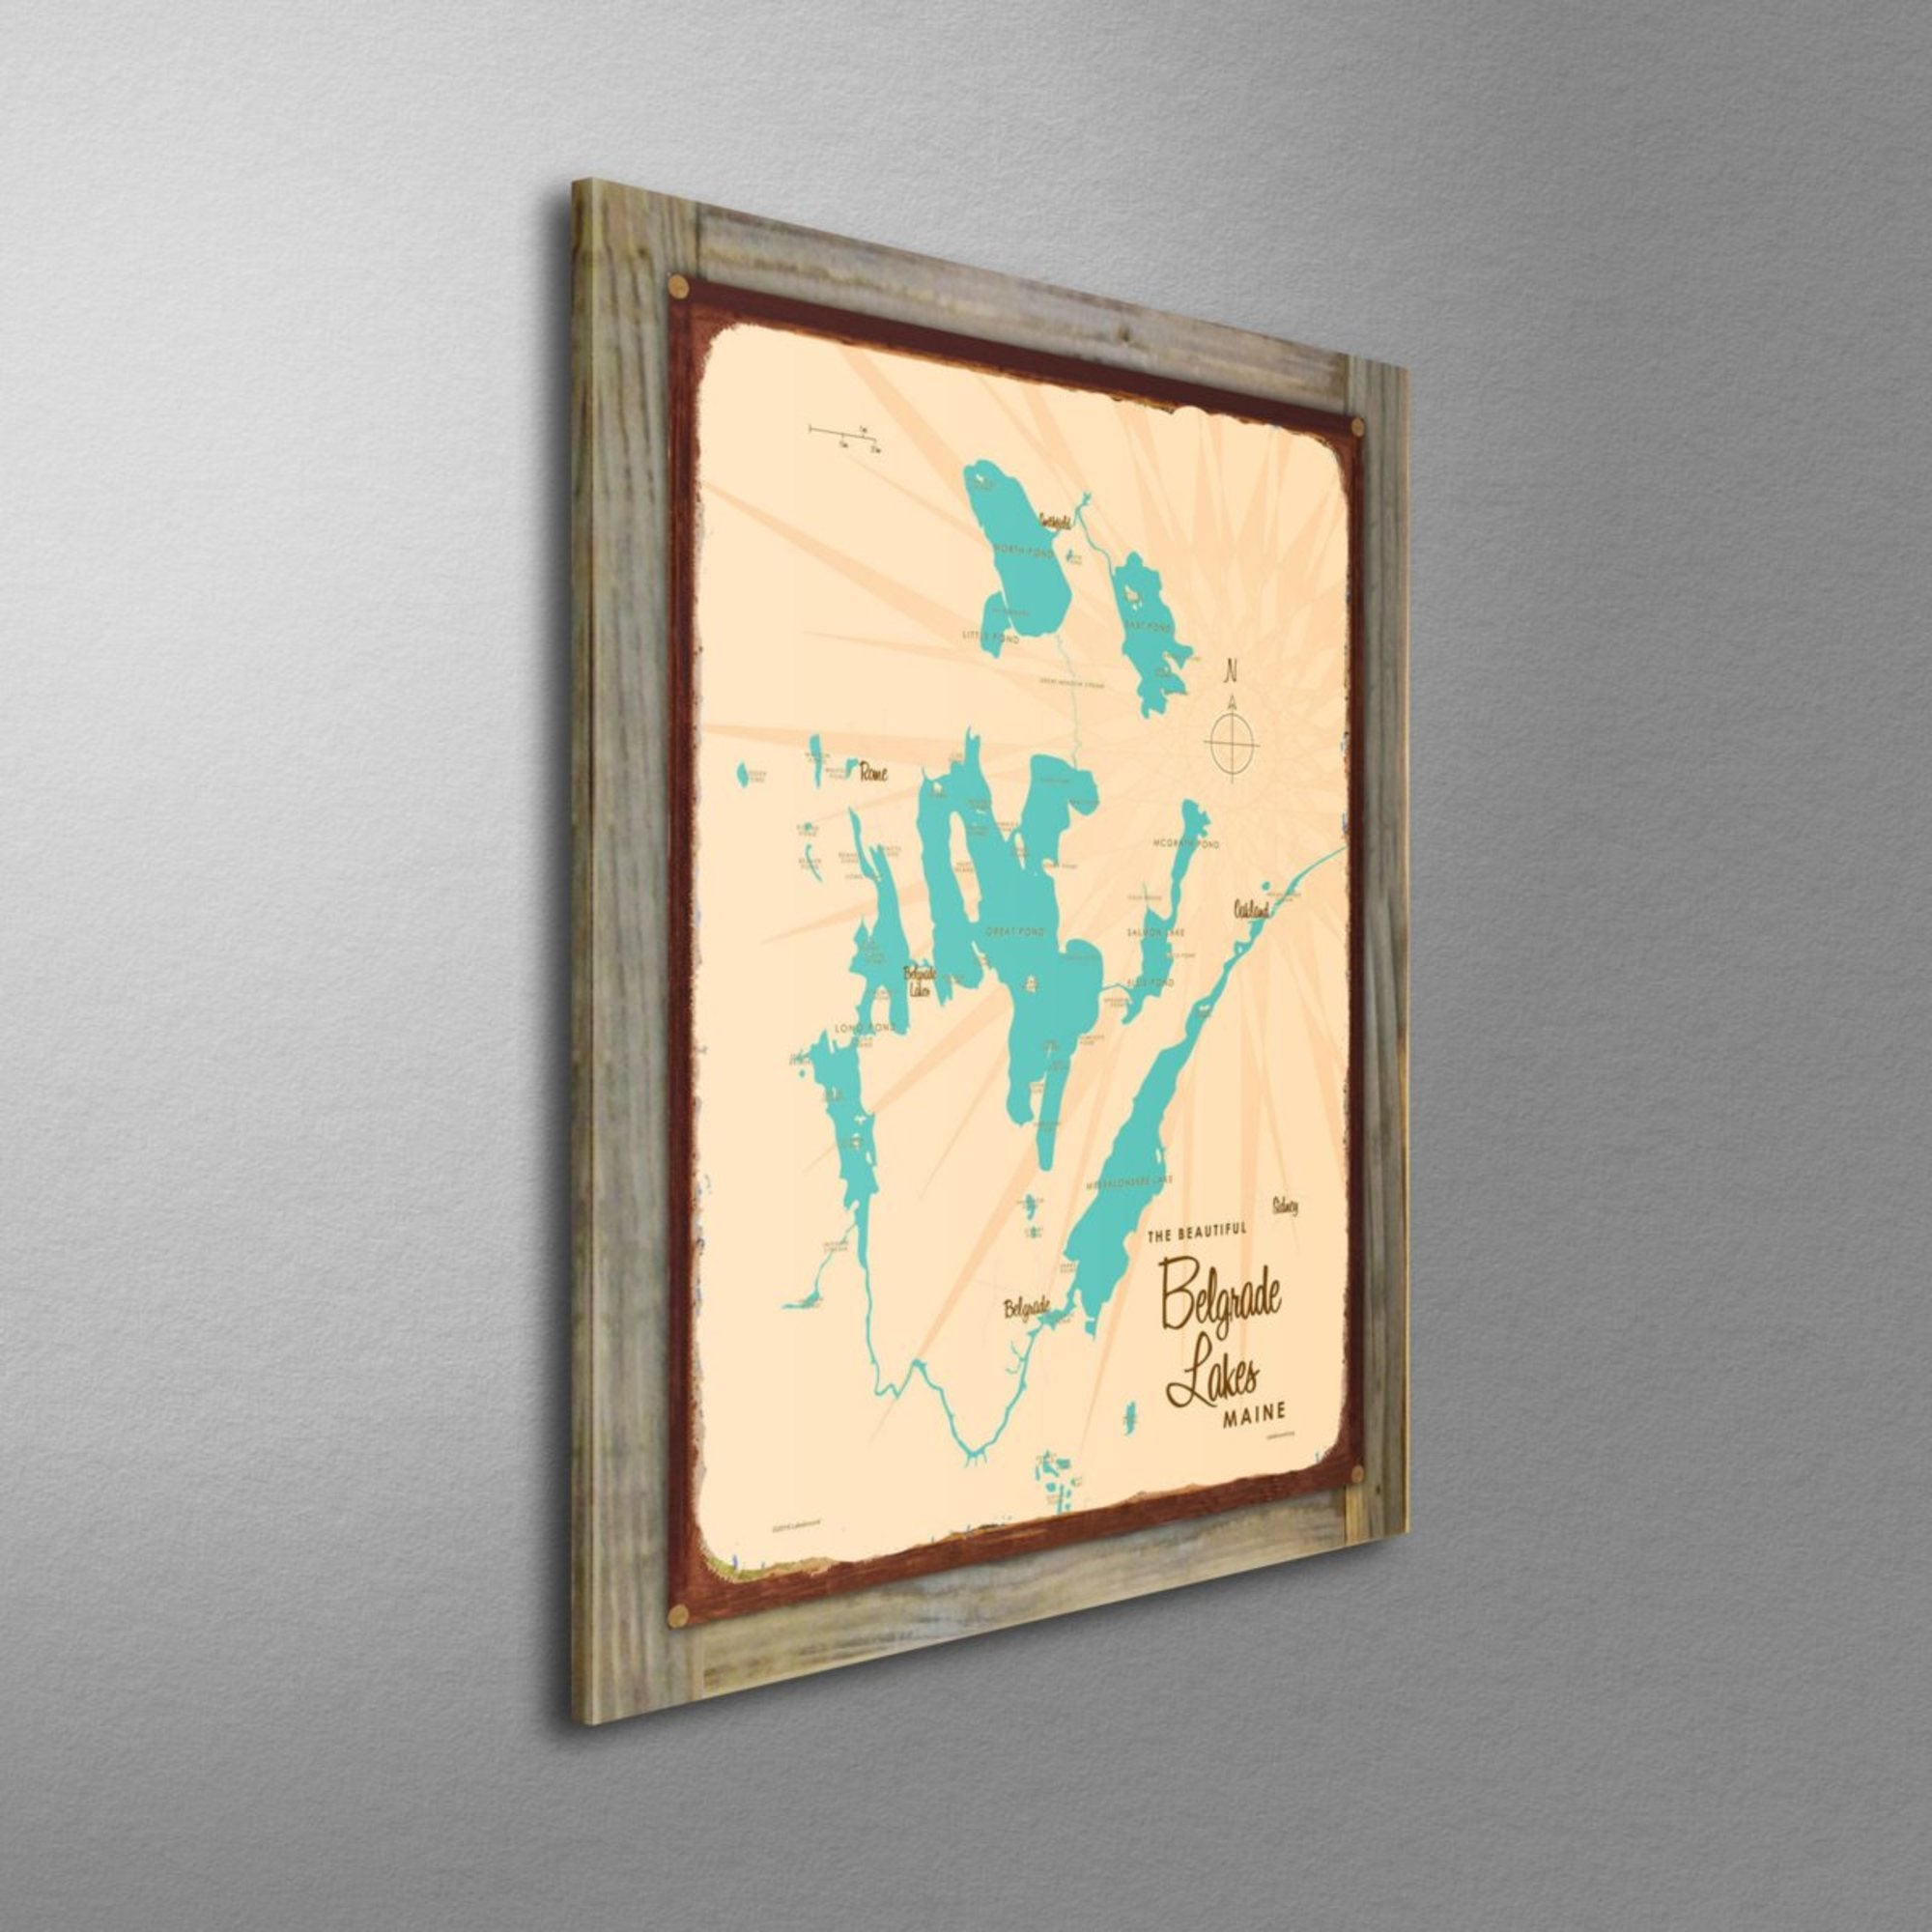 Belgrade Lakes Maine, Wood-Mounted Rustic Metal Sign Map Art